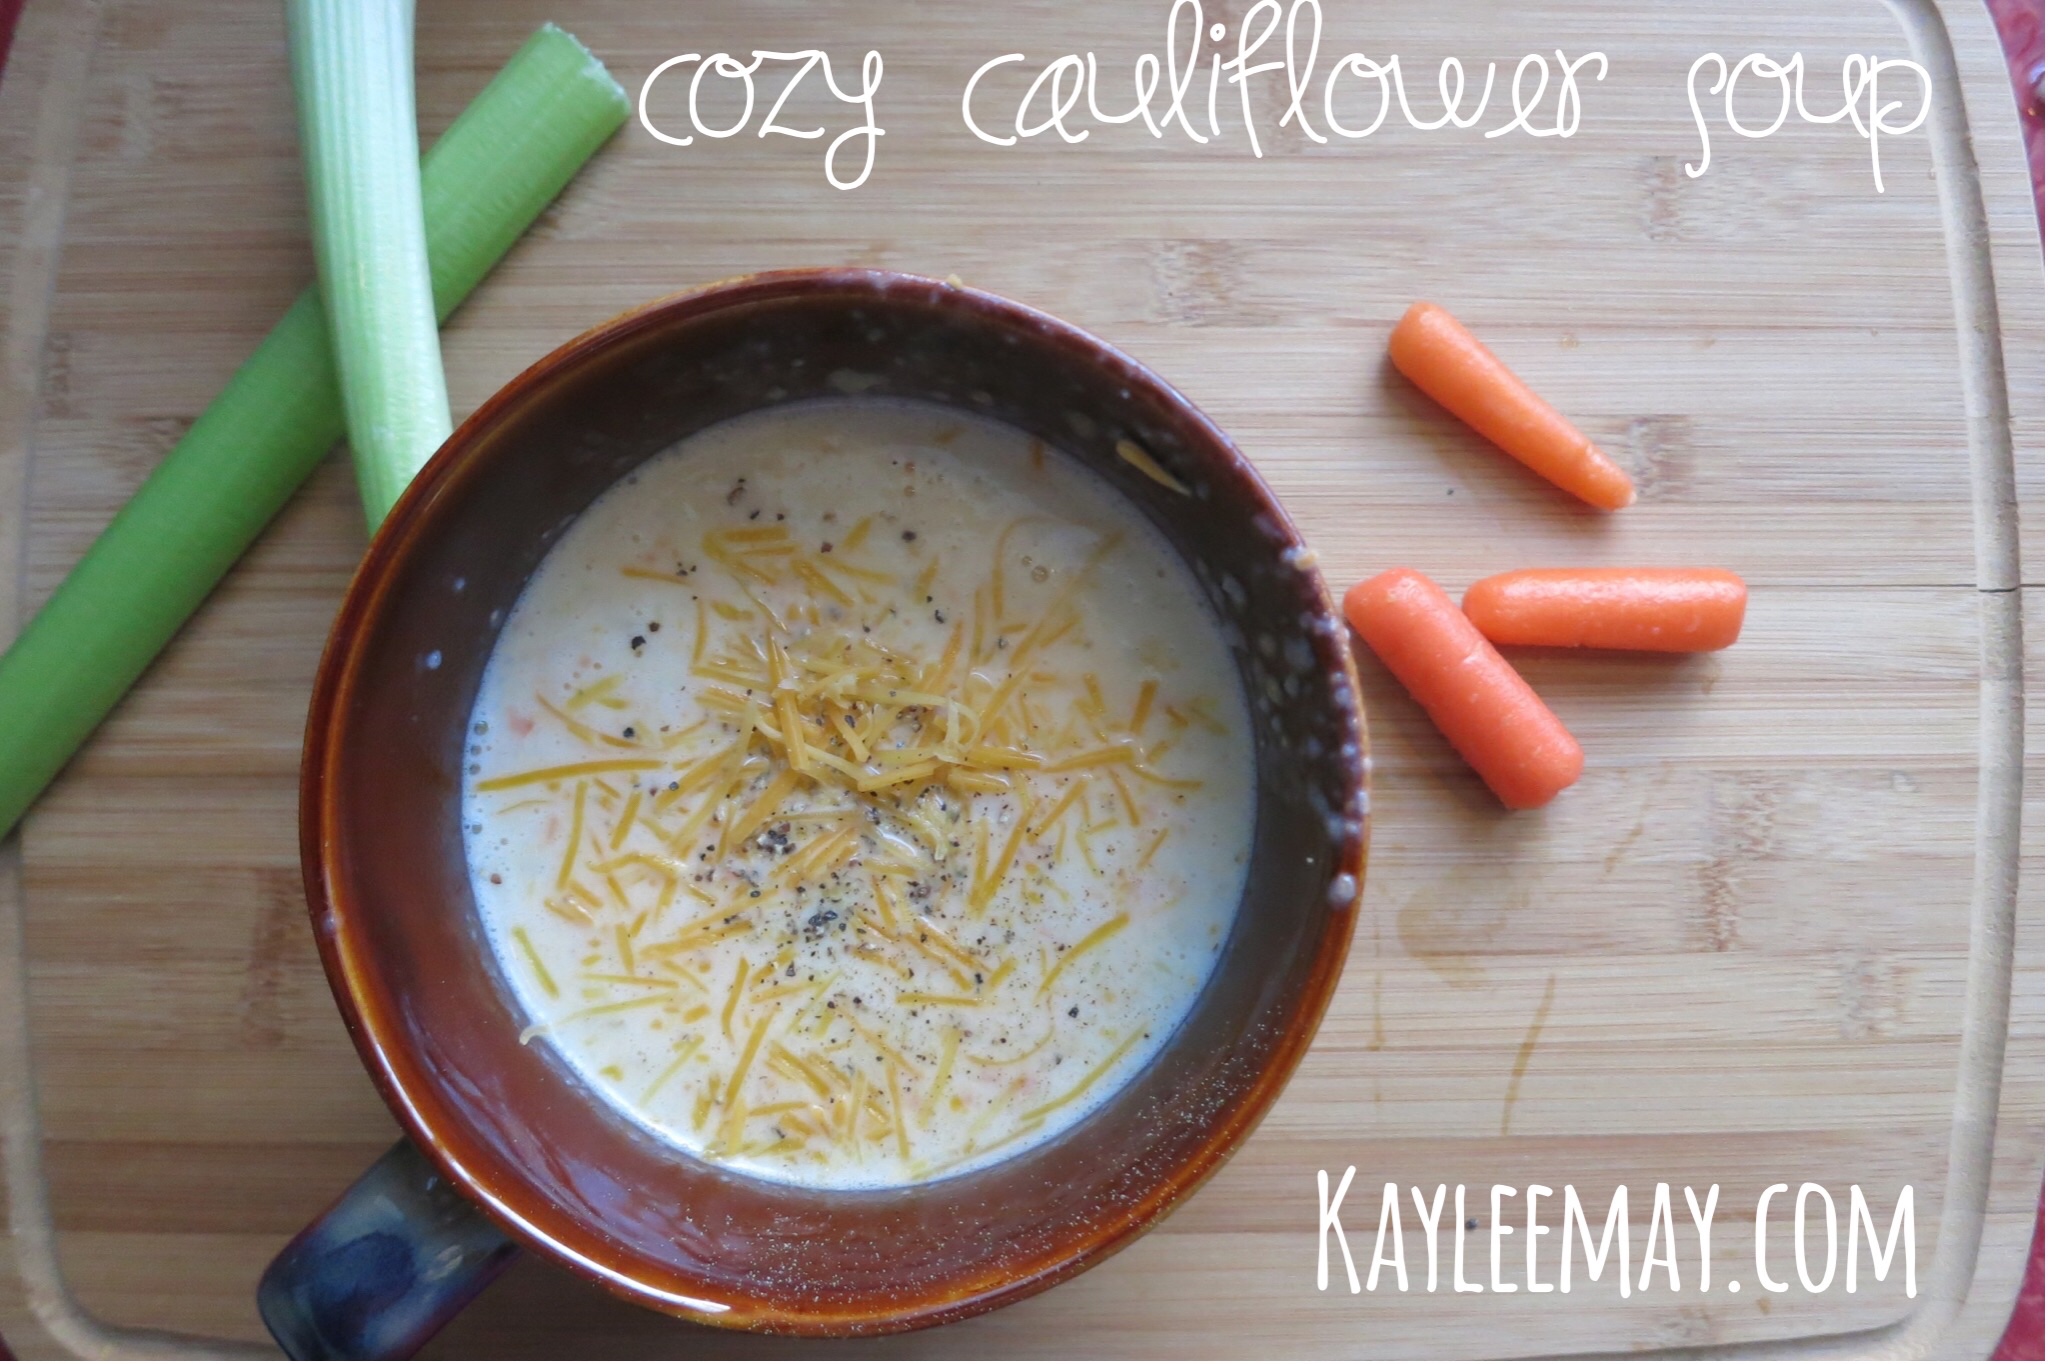 cozy cauliflower soup